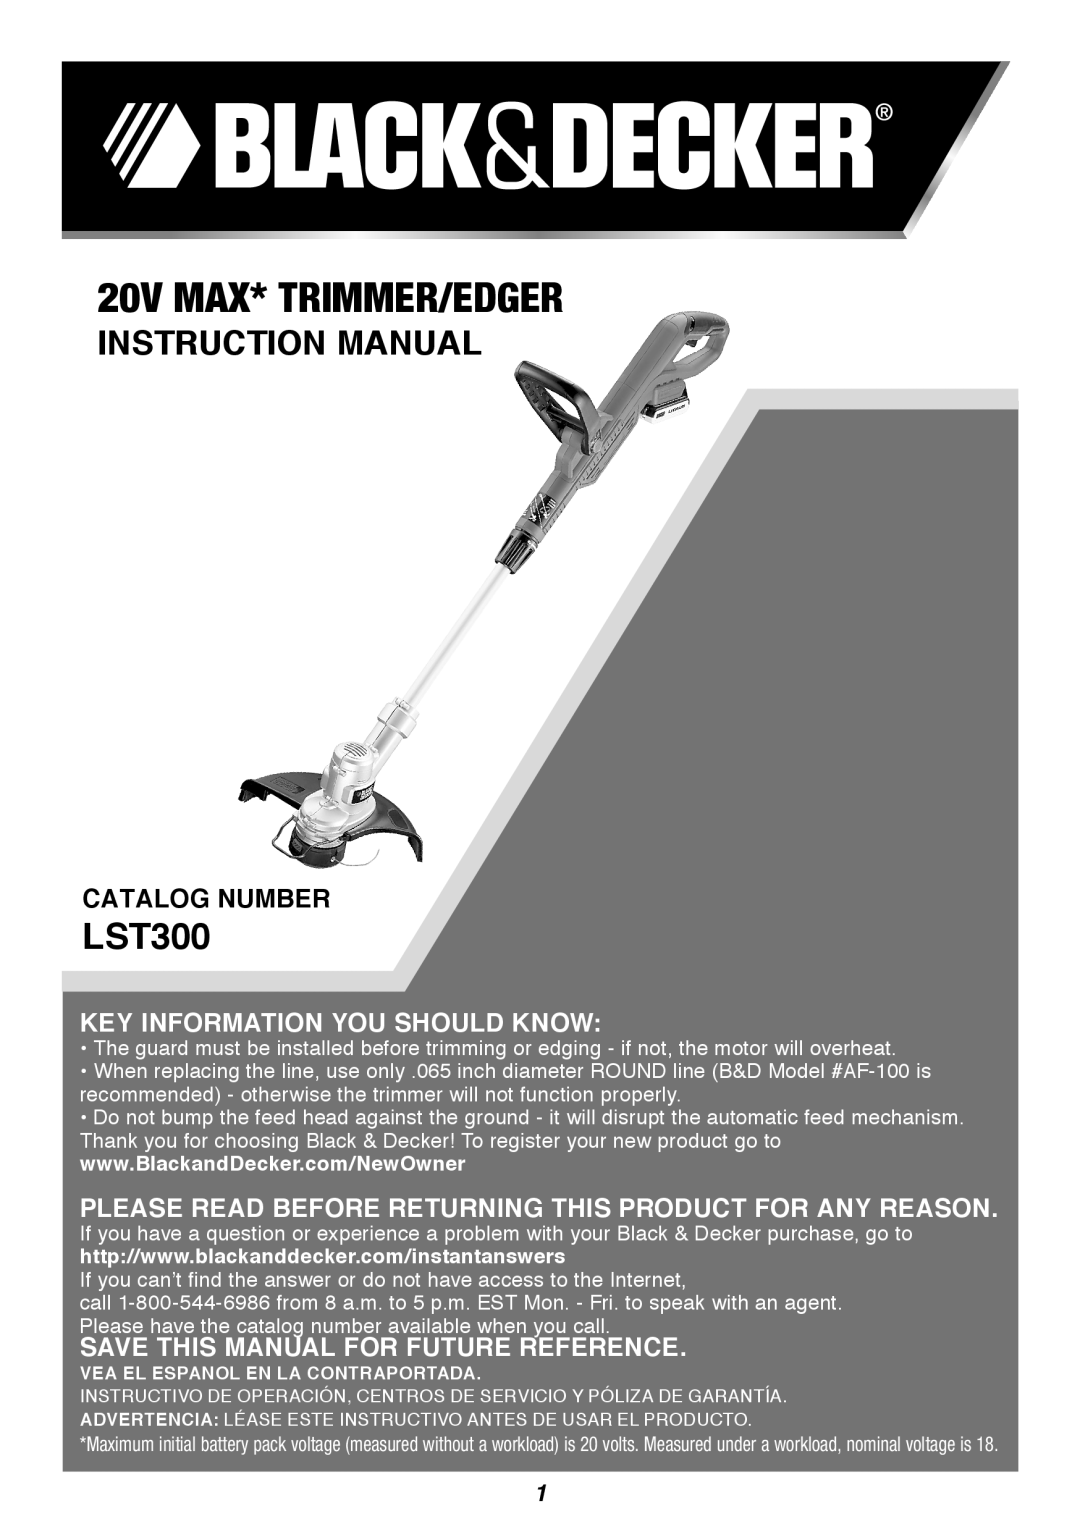 Black & Decker LST300R instruction manual 20V max* Trimmer/Edger, Catalog Number, Key Information You Should Know 